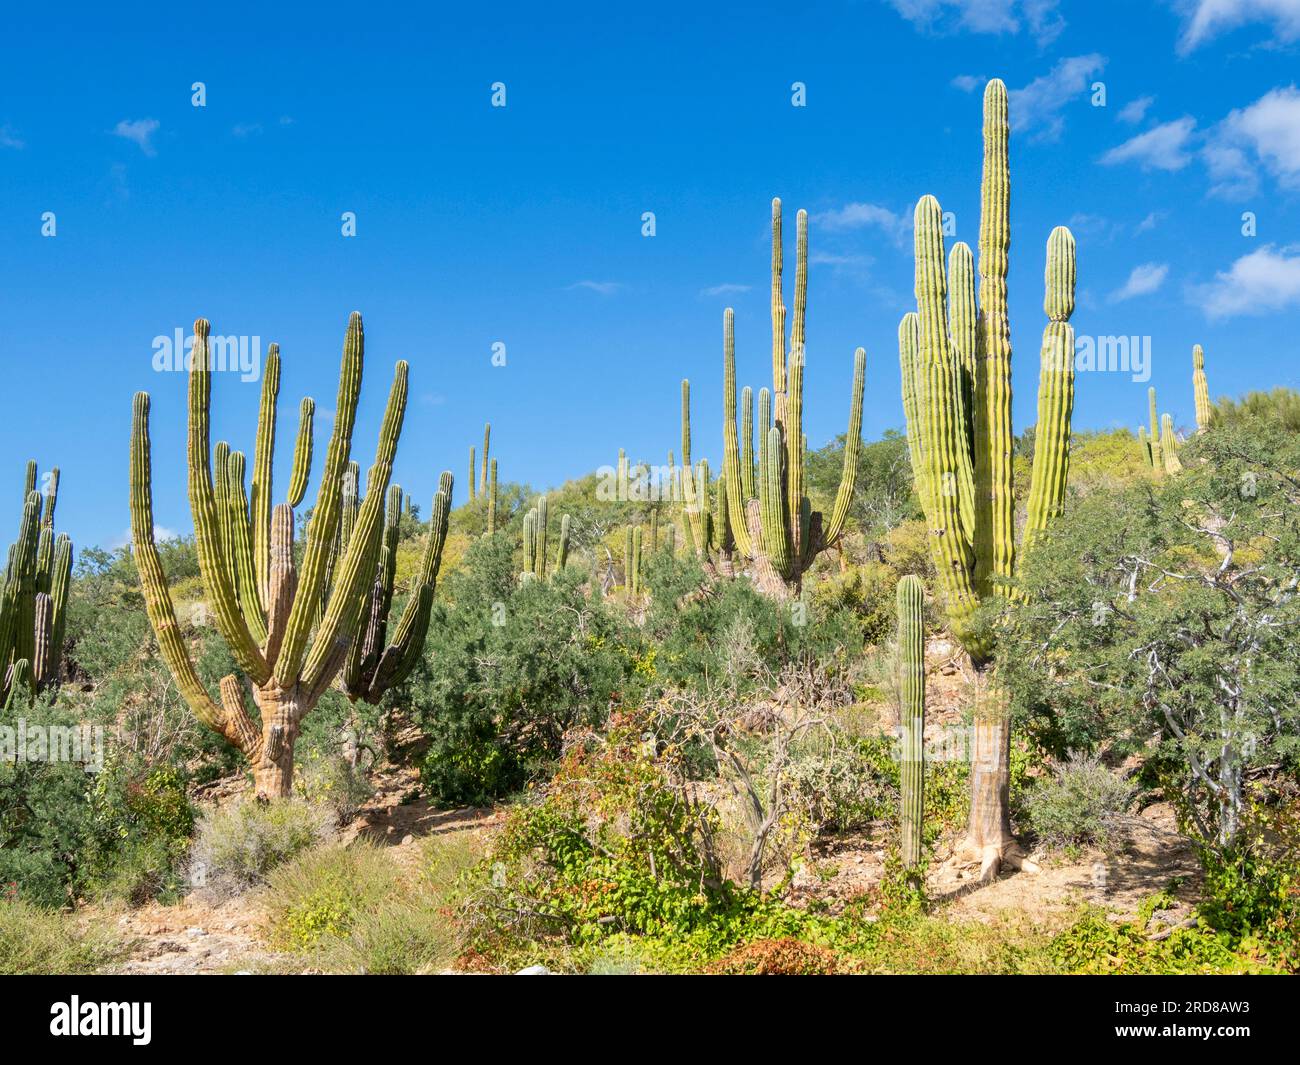 Cardon cactus (Pachycereus pringlei) forest on Isla San Jose, Baja California Sur, Mexico, North America Stock Photo